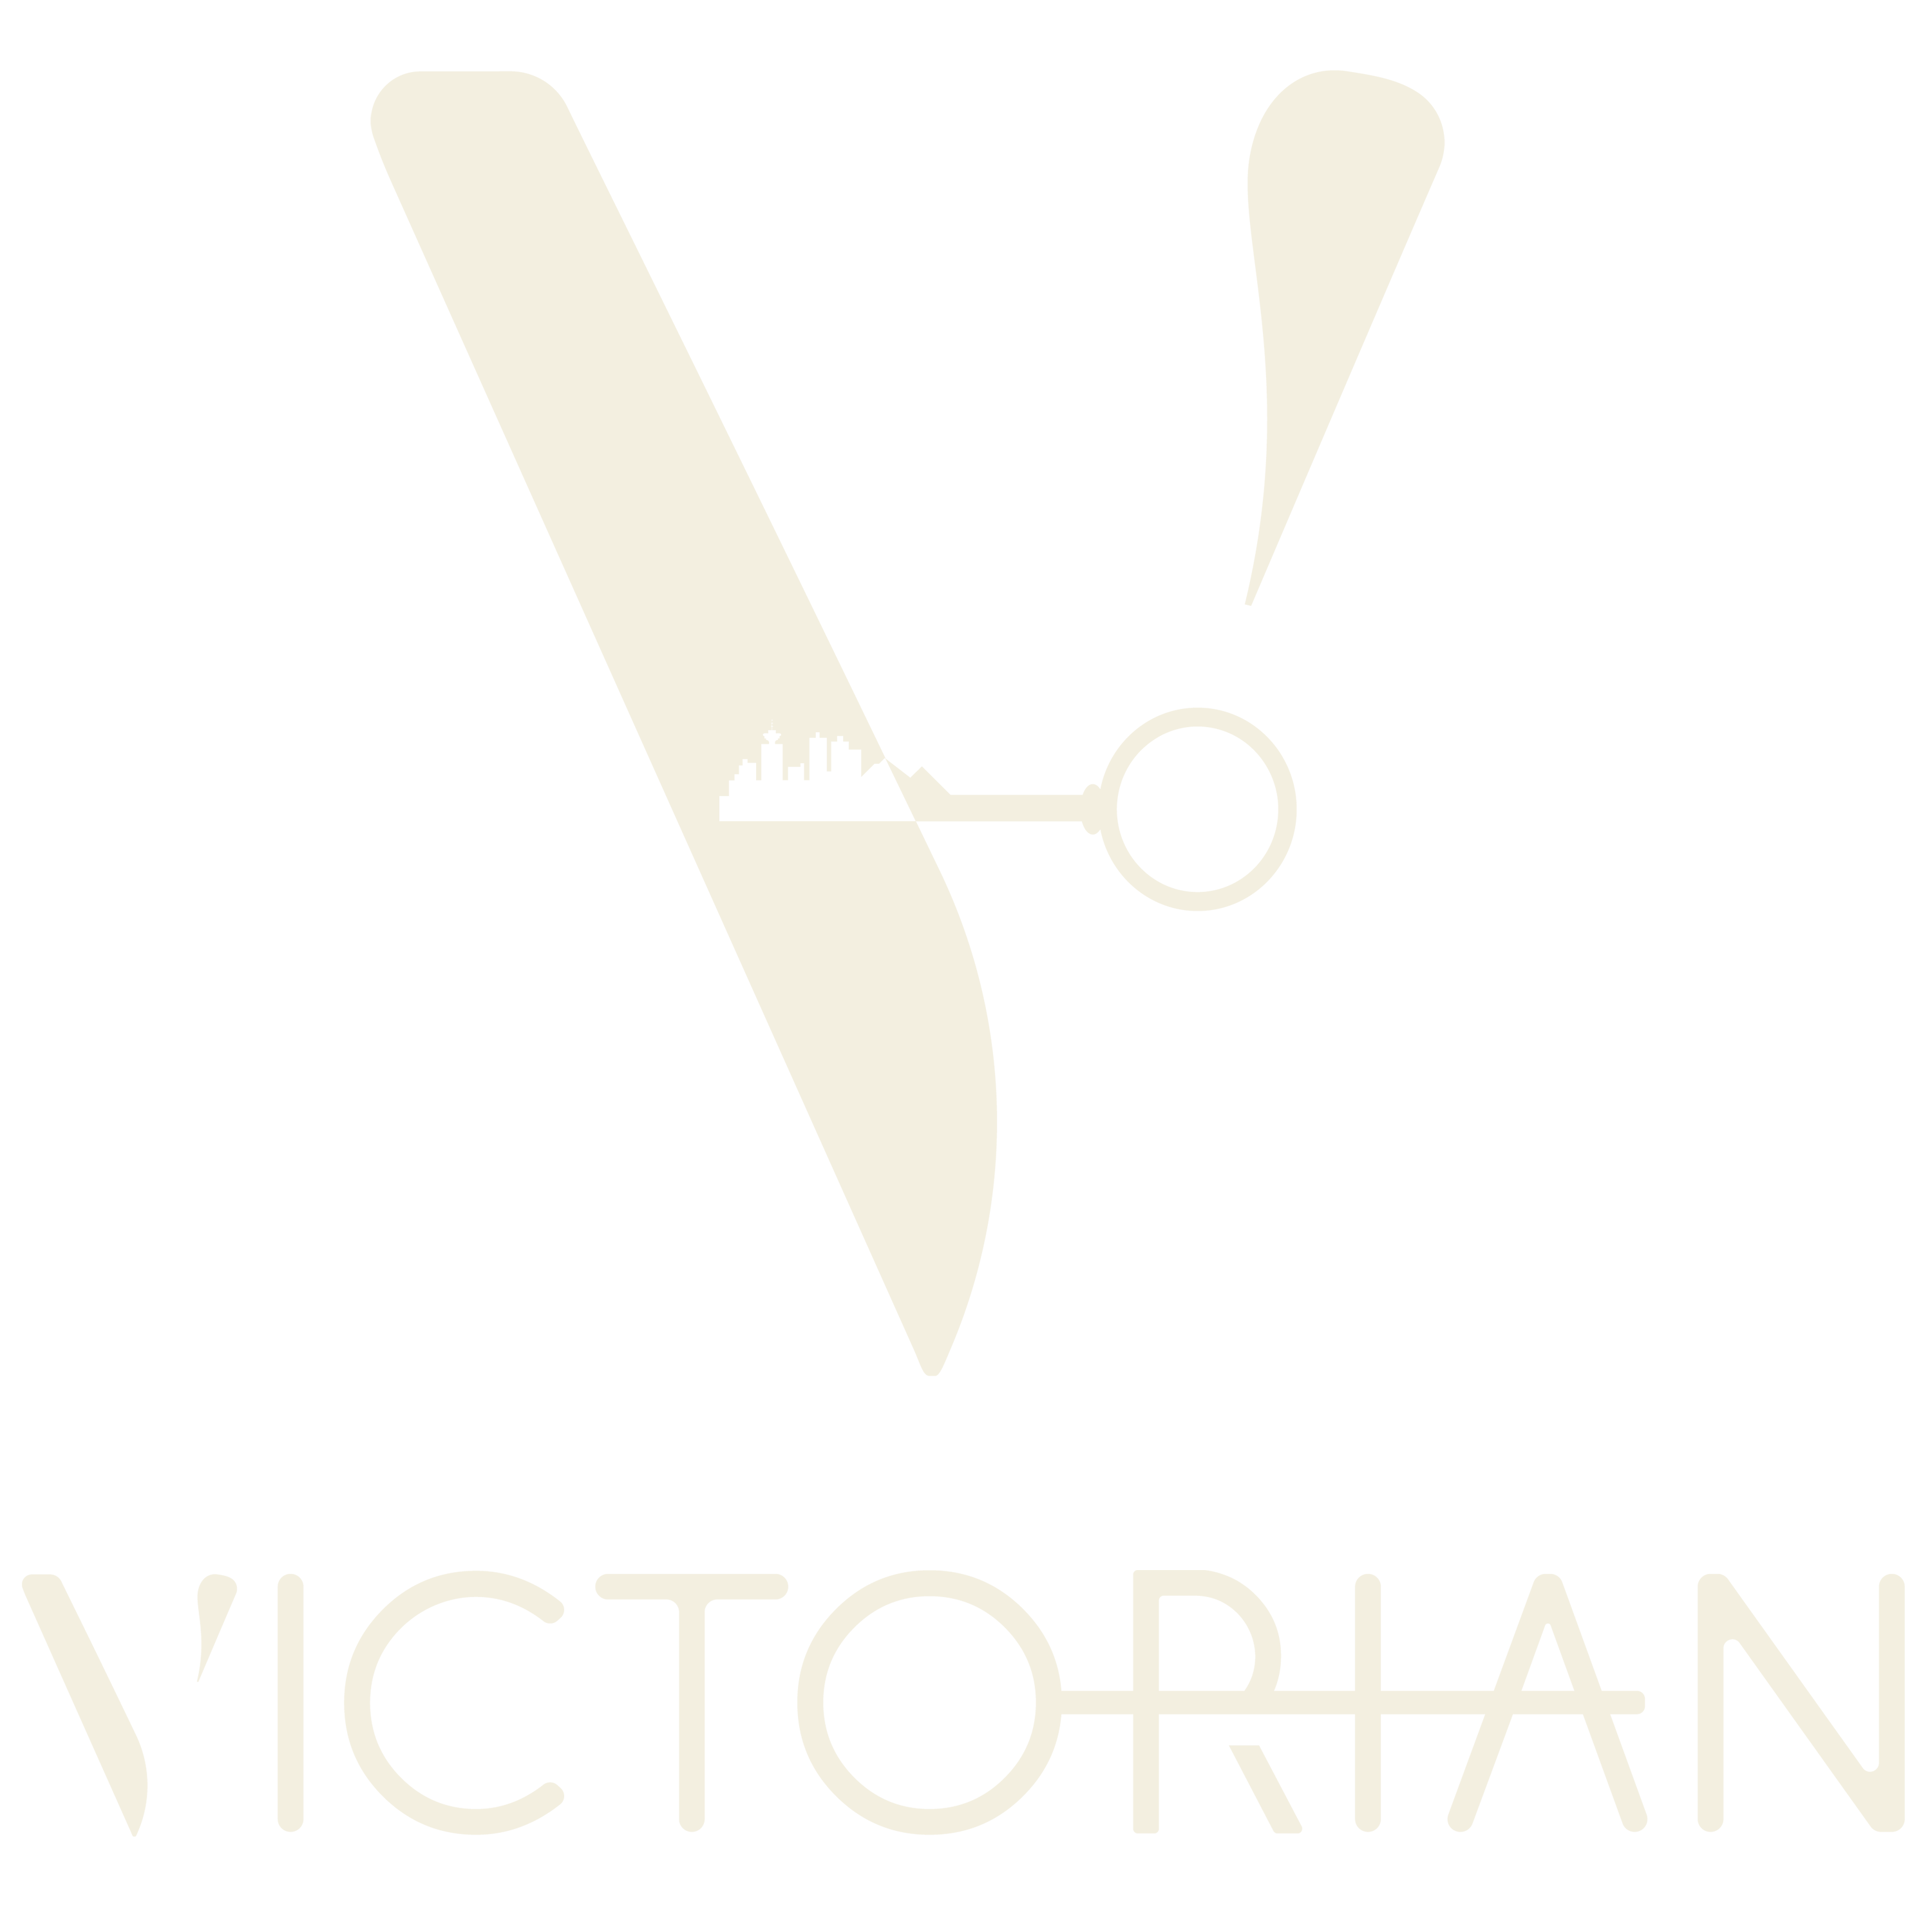 Victorian Hotel